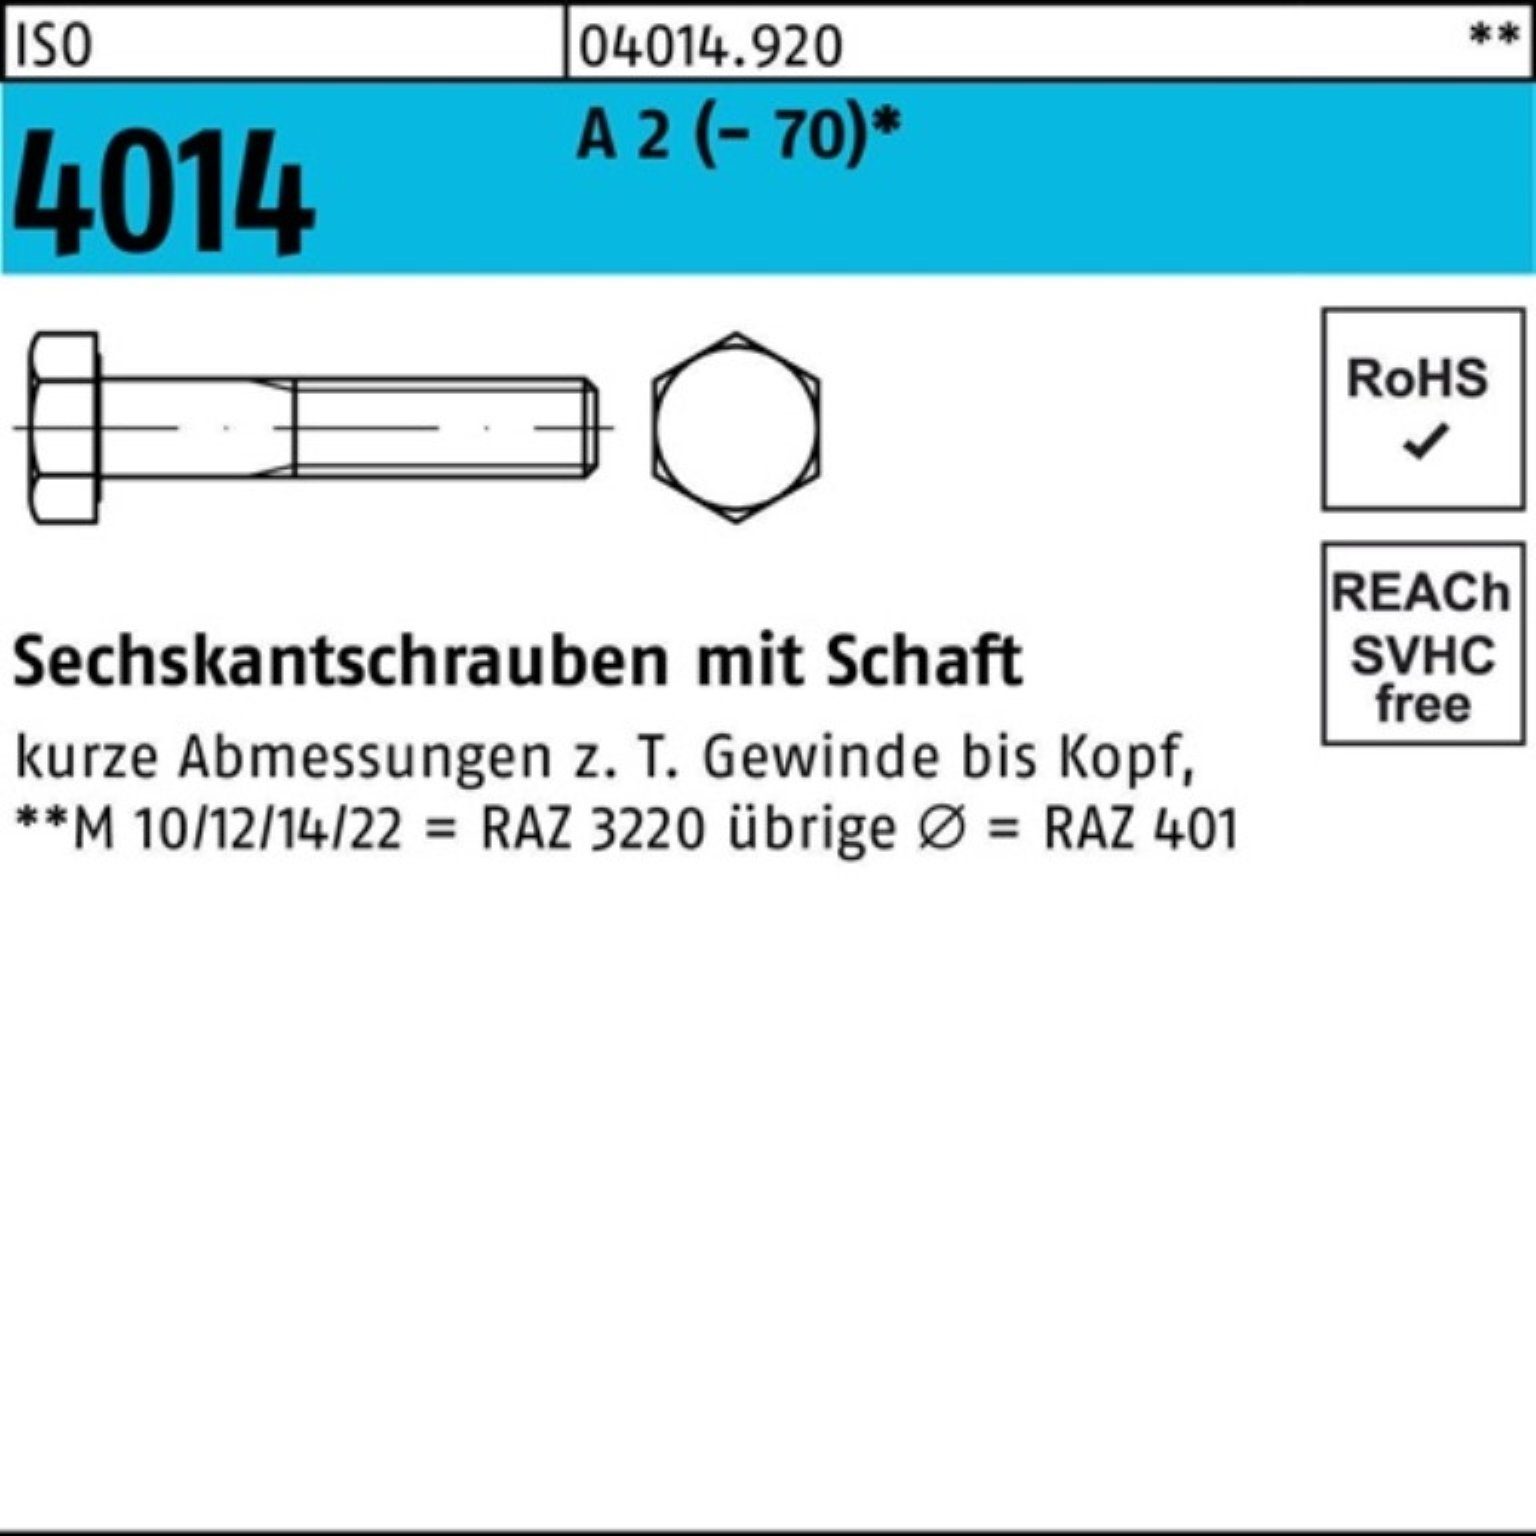 Bufab Sechskantschraube 200er Pack Sechskantschraube ISO 4014 Schaft M5x 65 A 2 (70) 200 St